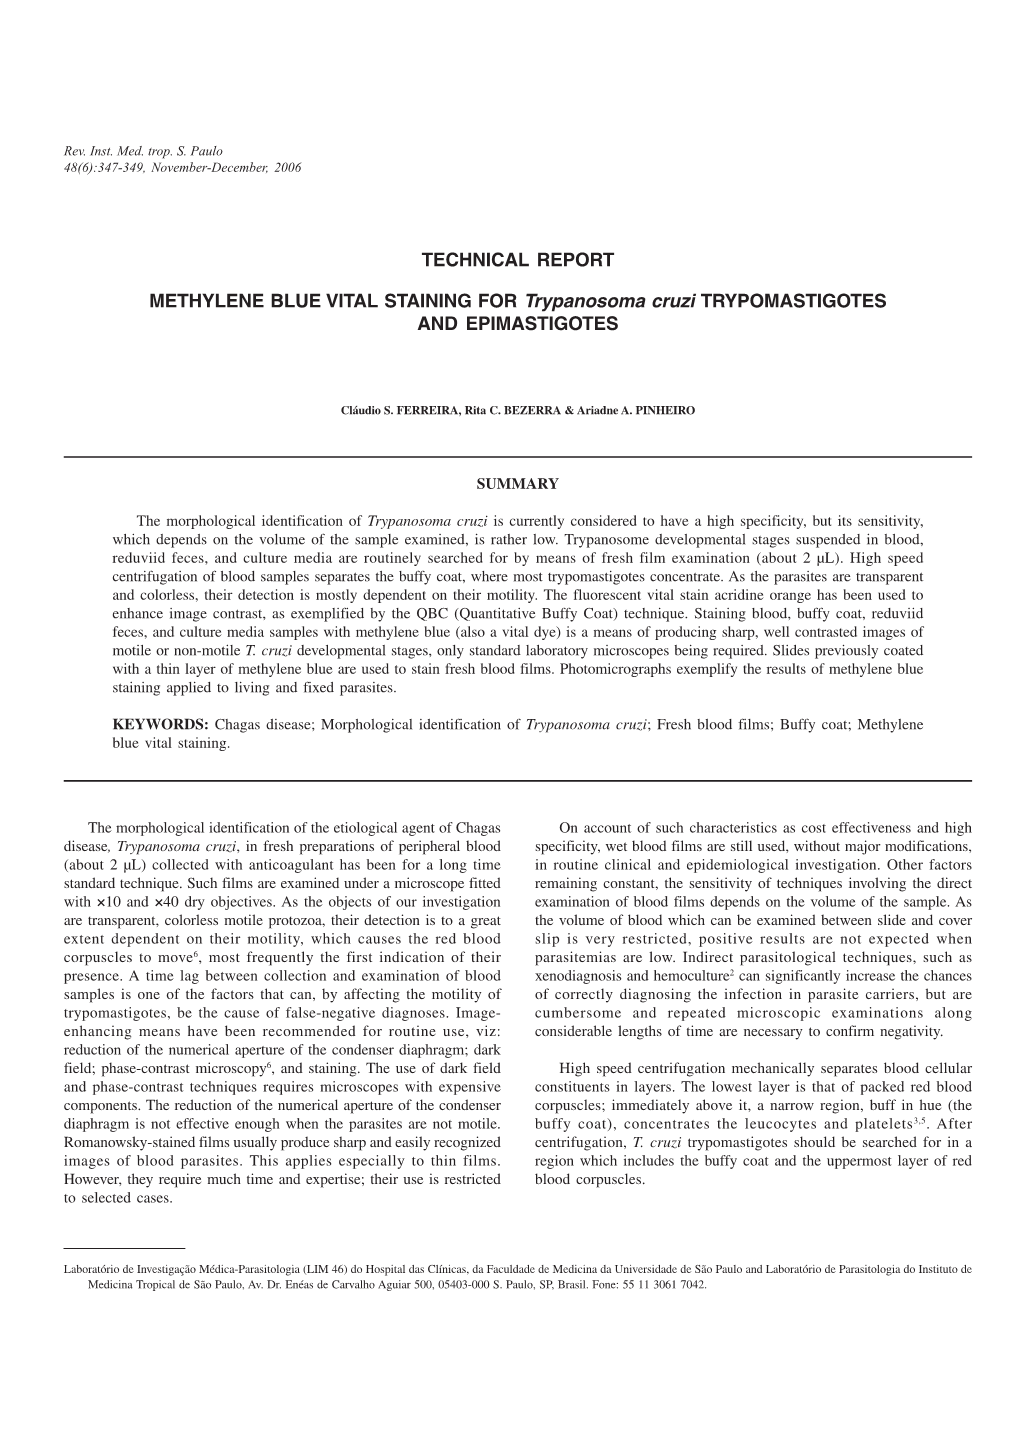 Technical Report Methylene Blue Vital Staining